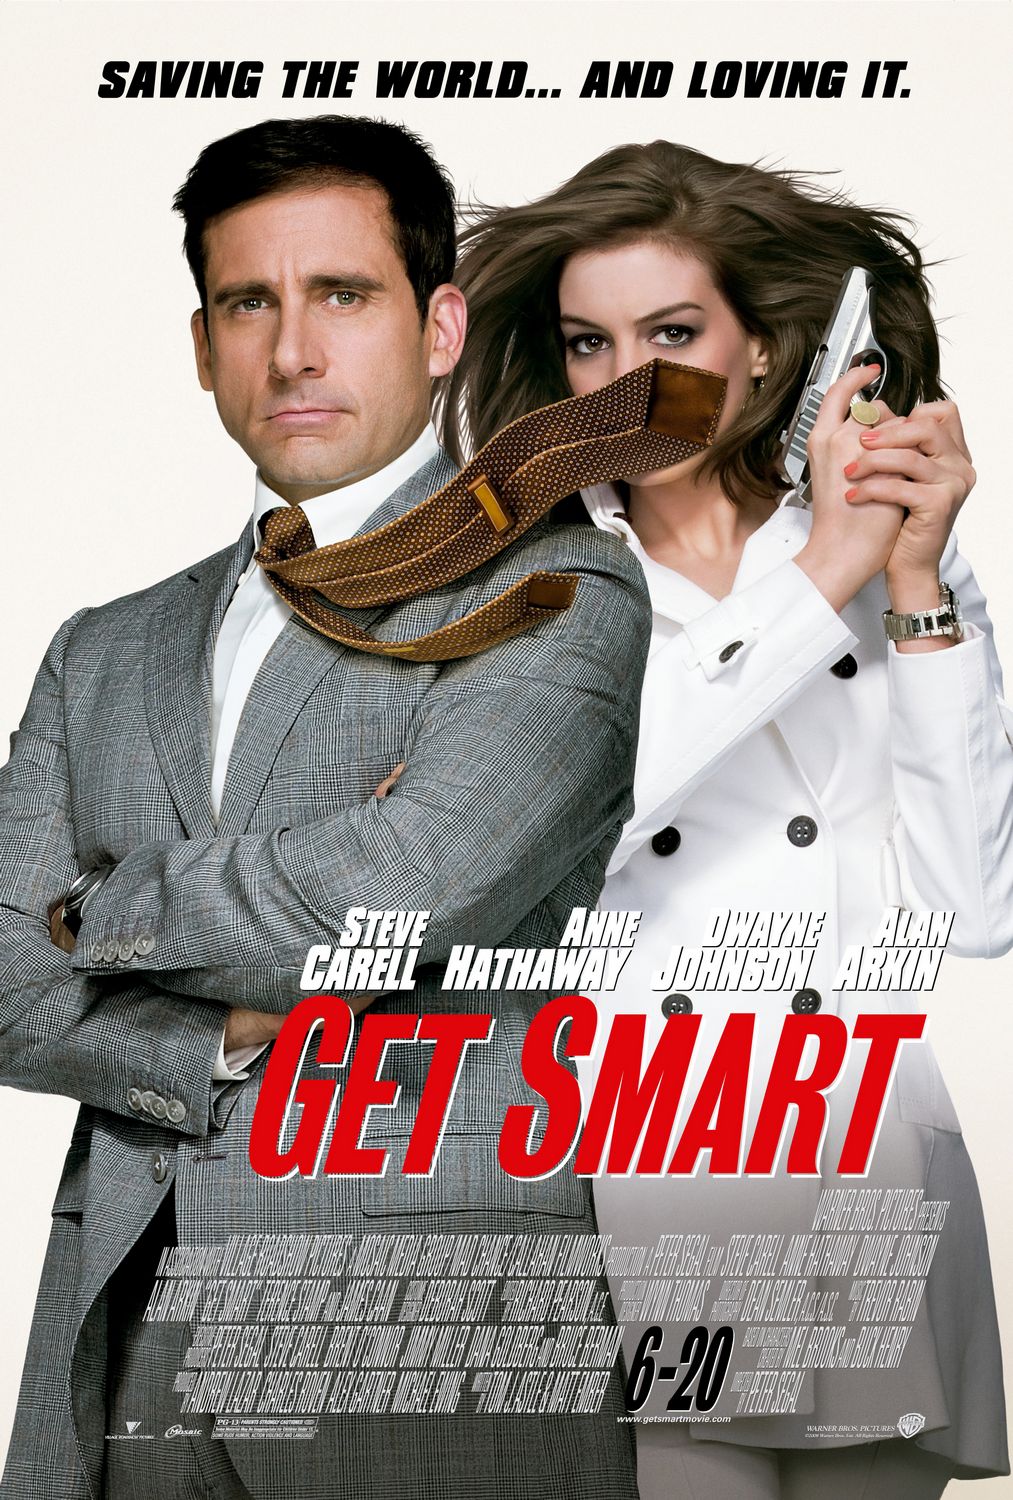 Get Smart (film) Warner Bros